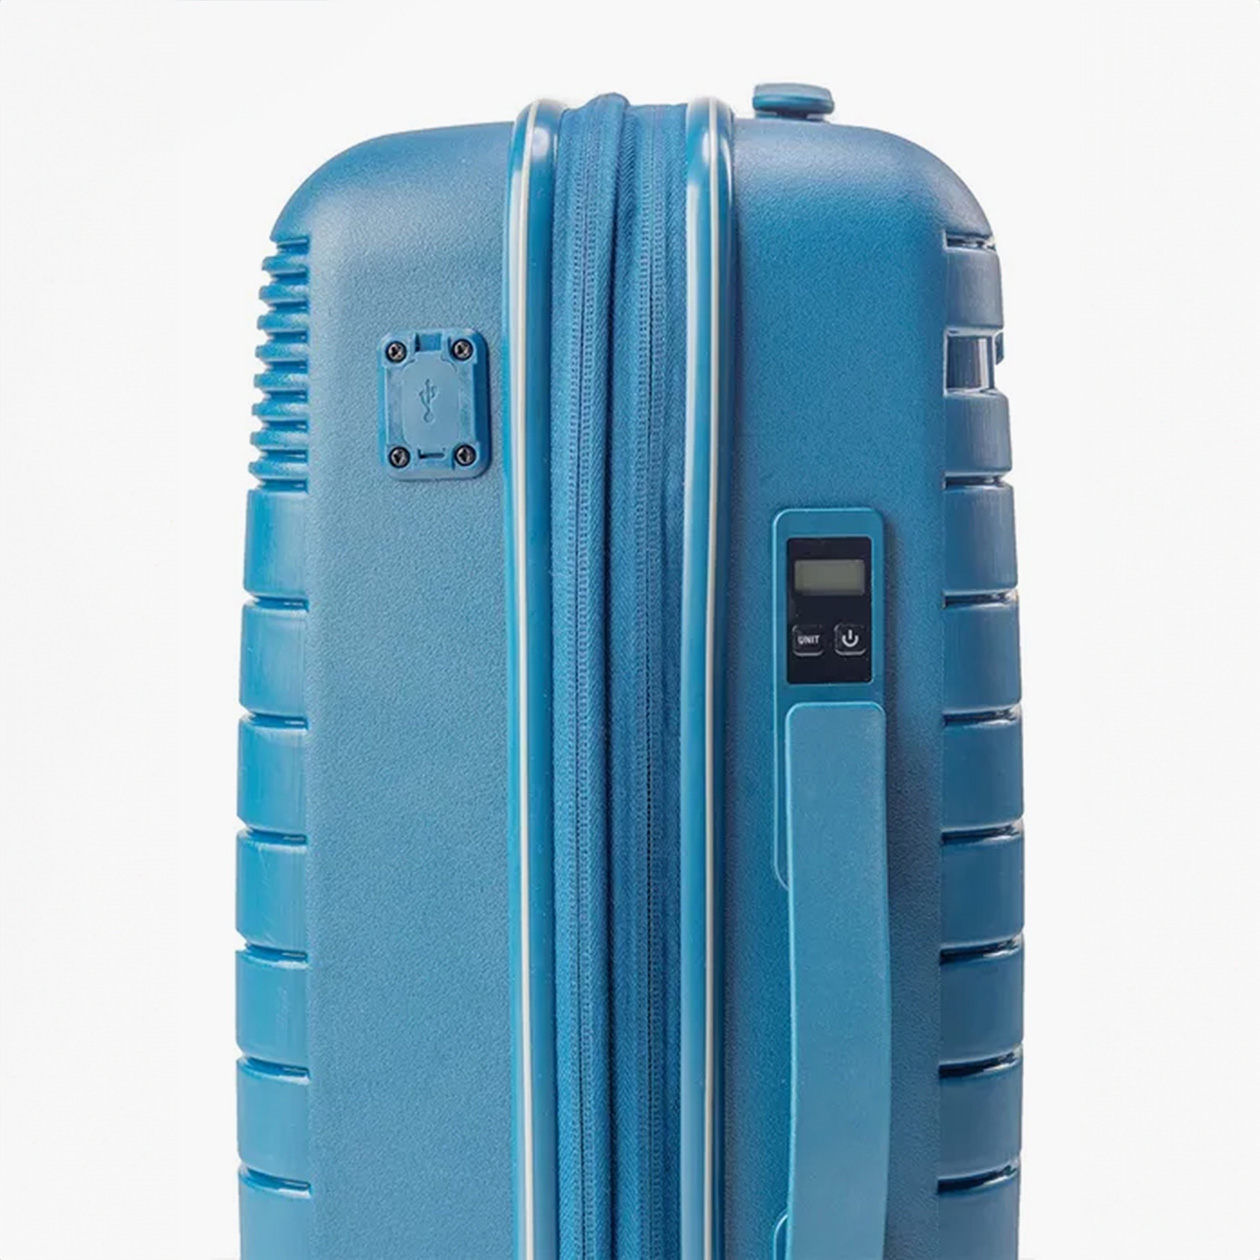 В чемодане Neebo есть встроенные весы и USB-порт. Вариант для ручной клади стоит около 14 000 ₽. Источник: ozon.ru